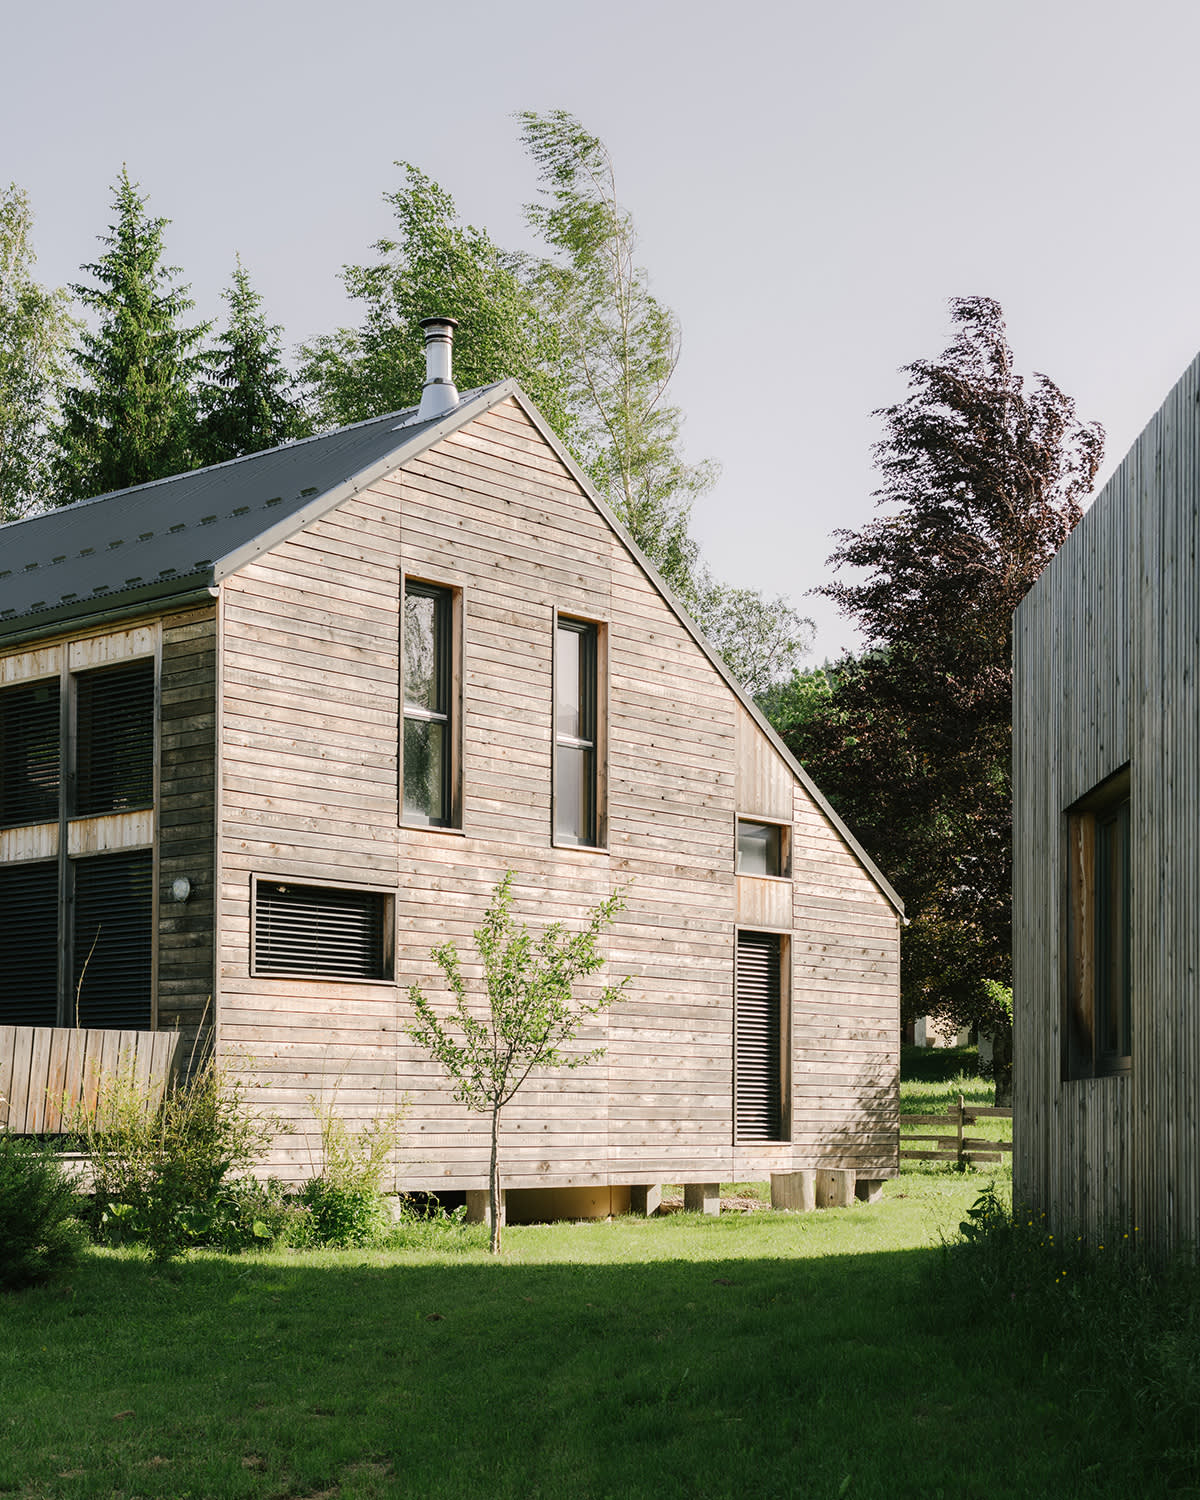 Façade d'une maison en bois avec fenêtres verticales